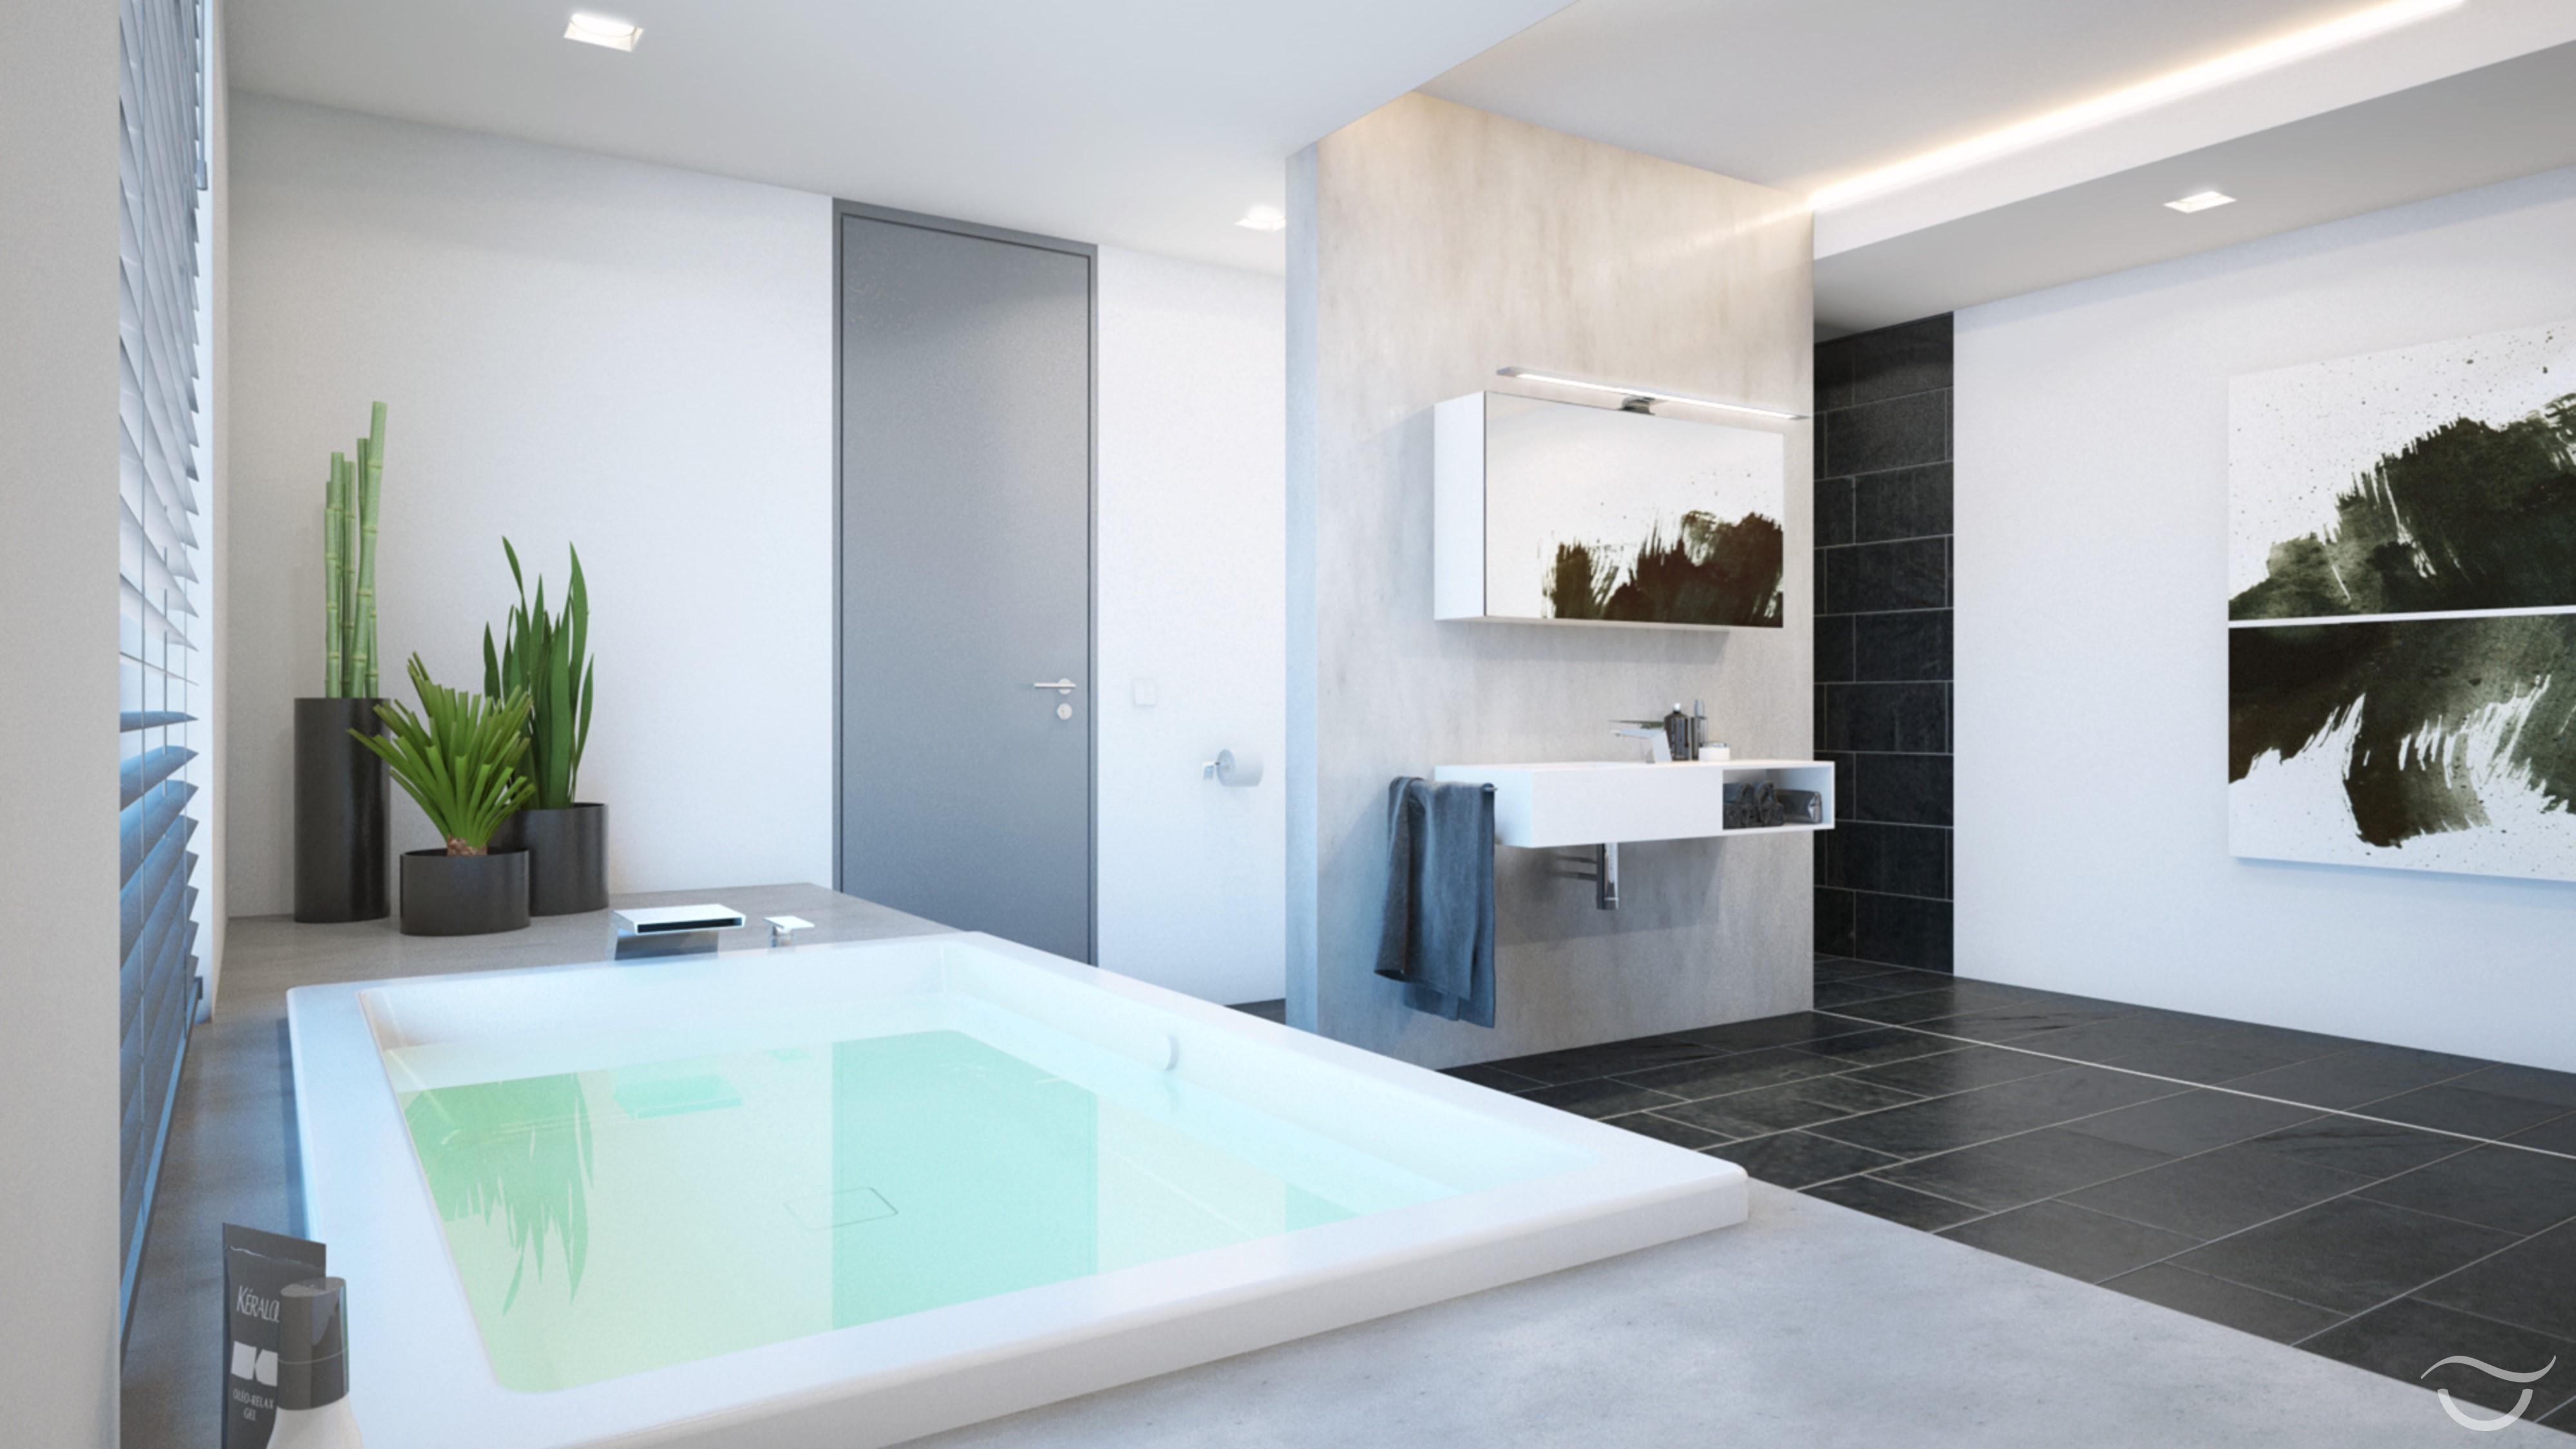 Die großzügige Badewanne lädt zum Verweilen ein #badewanne #extravagant #stylisch ©Banovo GmbH